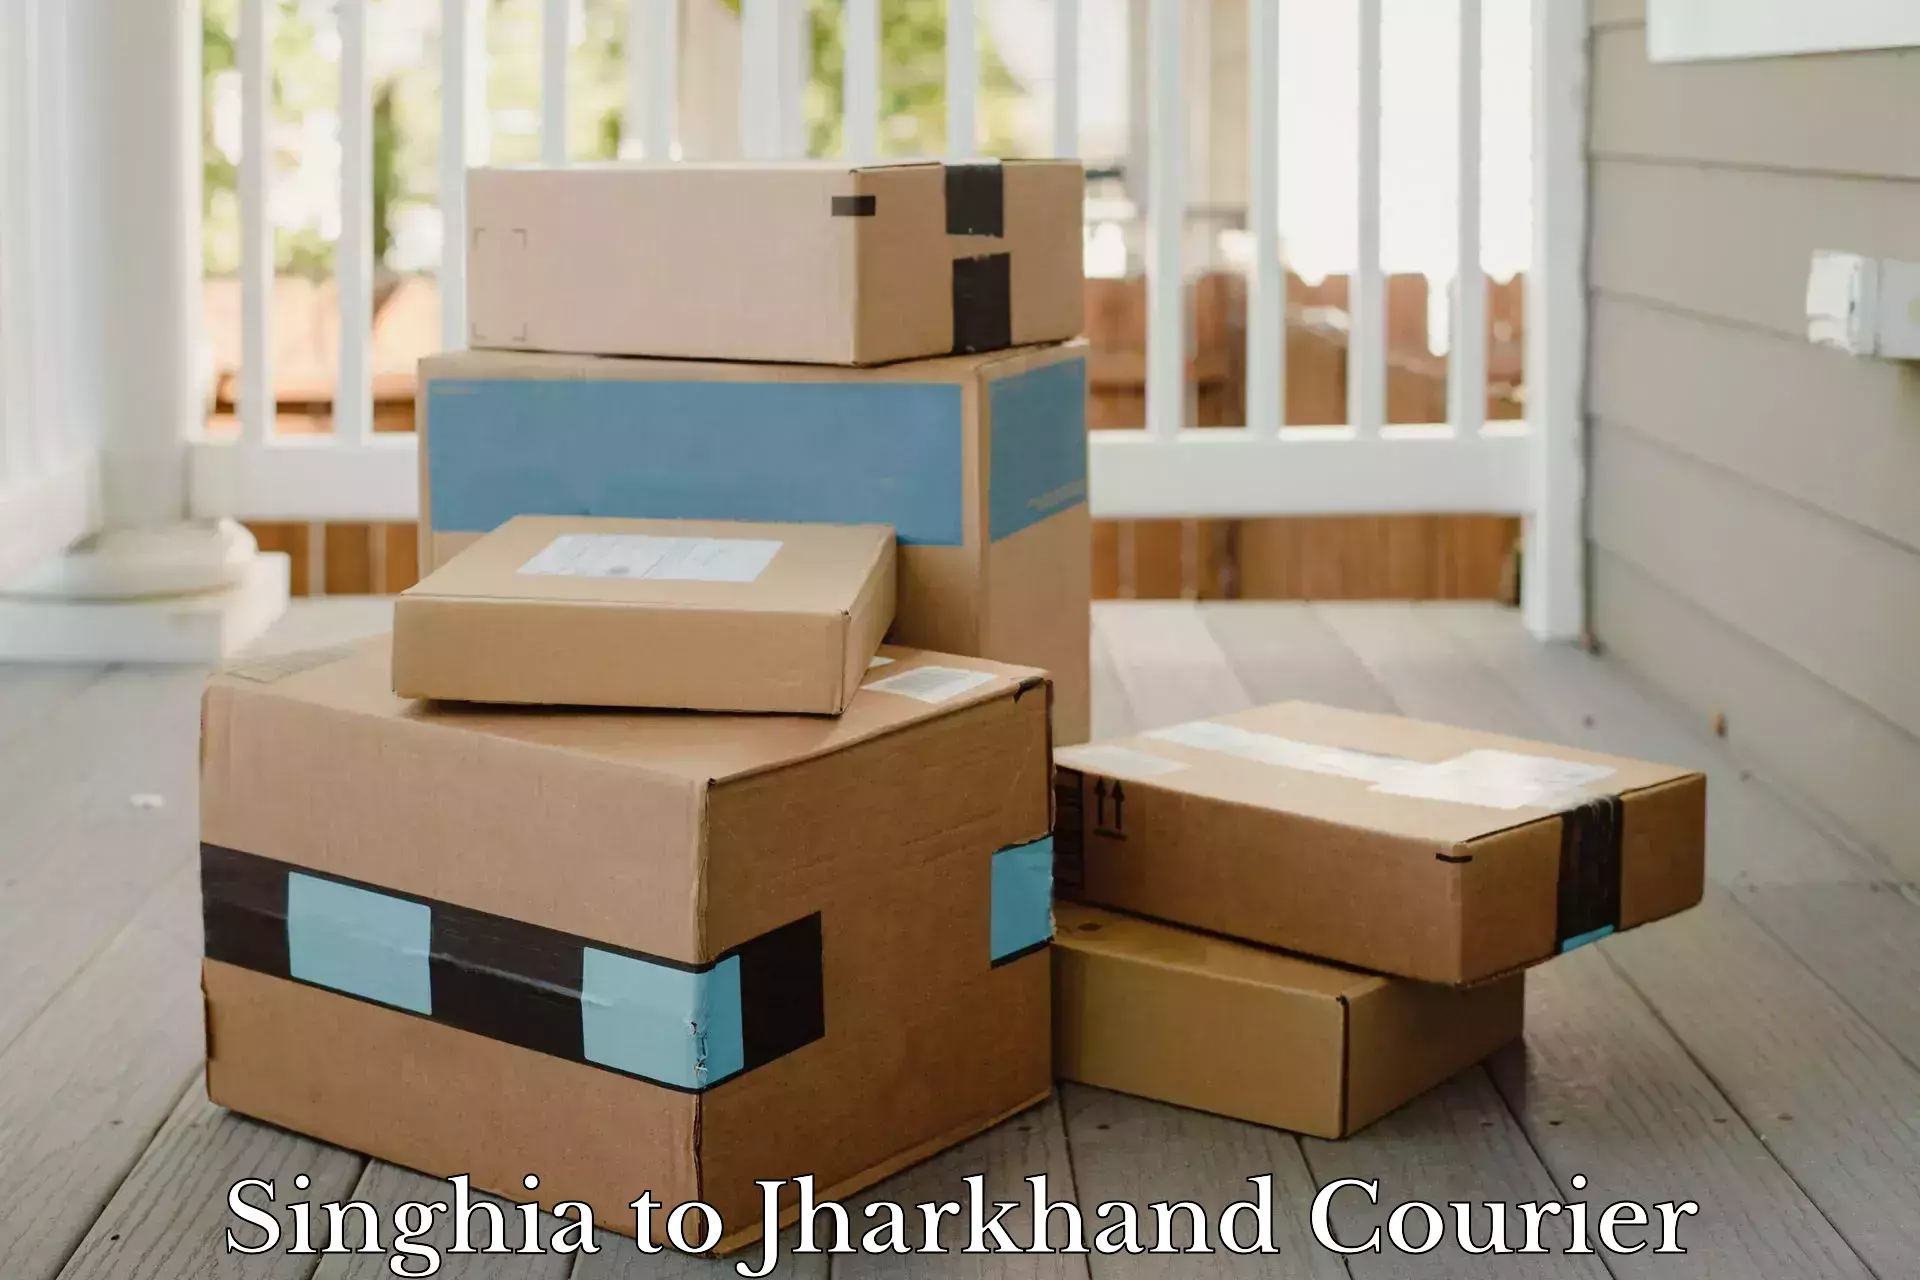 Comprehensive parcel tracking in Singhia to Sahibganj